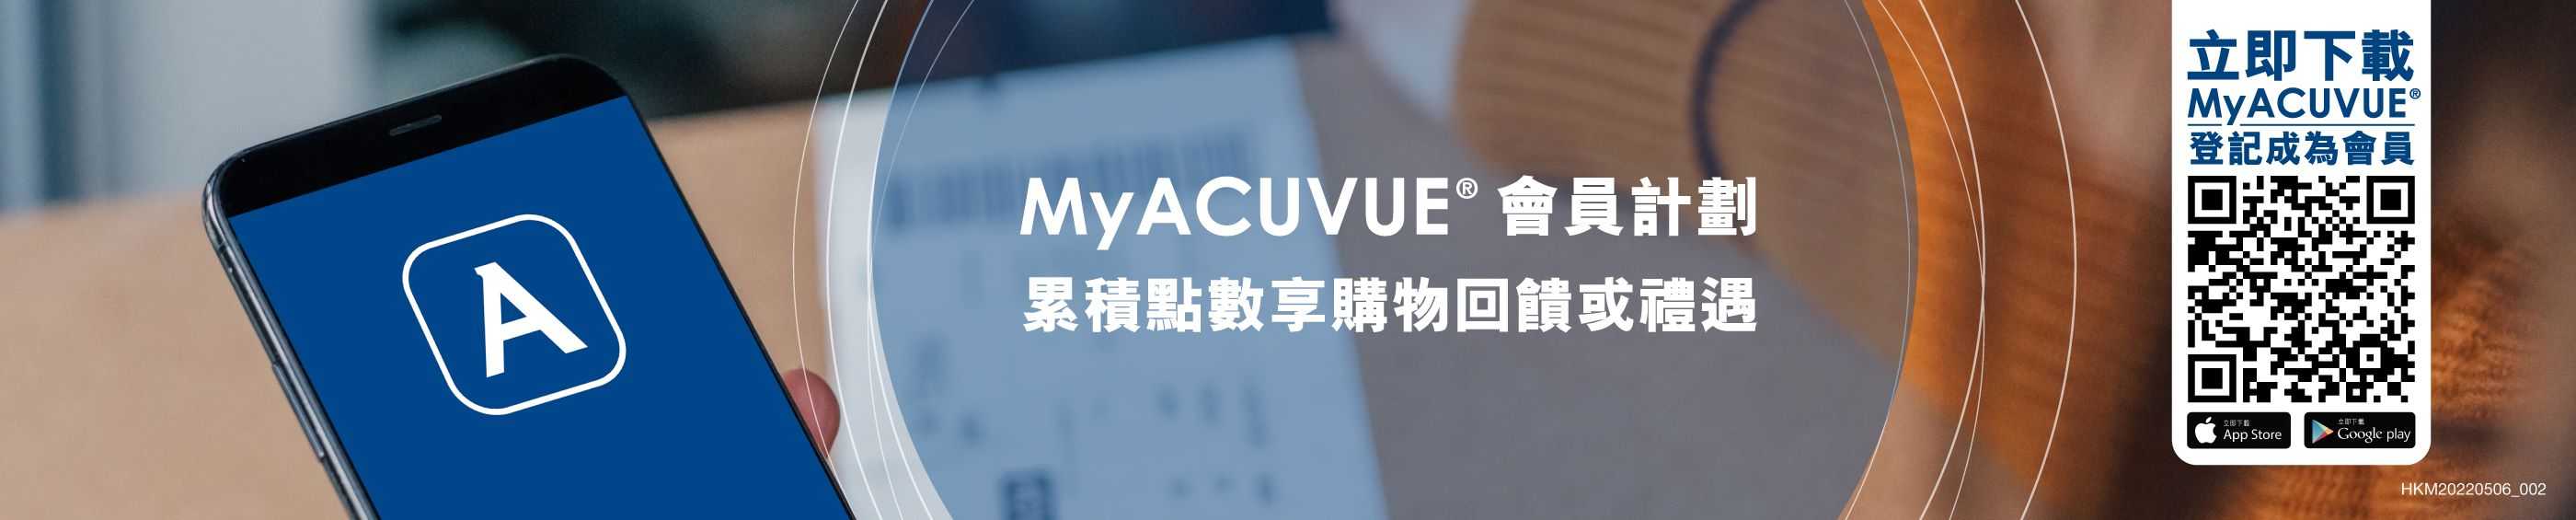 MyACUVUE會員計劃 獨有迎新及新品優惠，累積點數享購物回饋1或禮遇